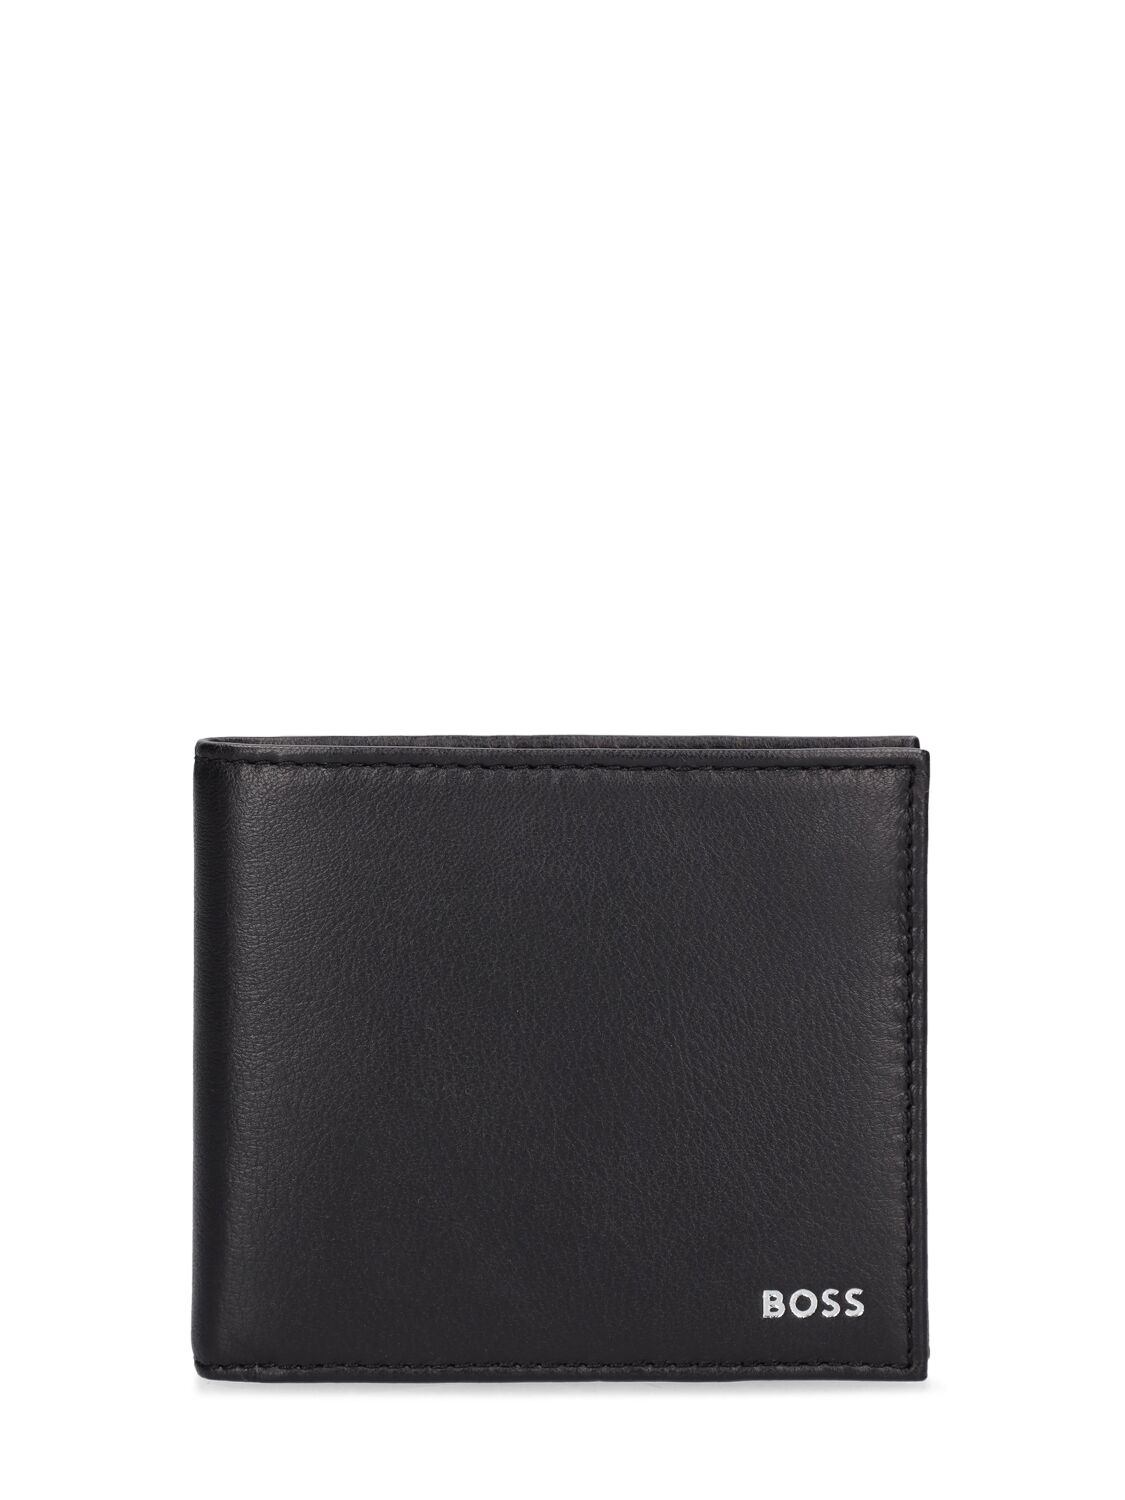 Hugo Boss Randy Leather Wallet In Black